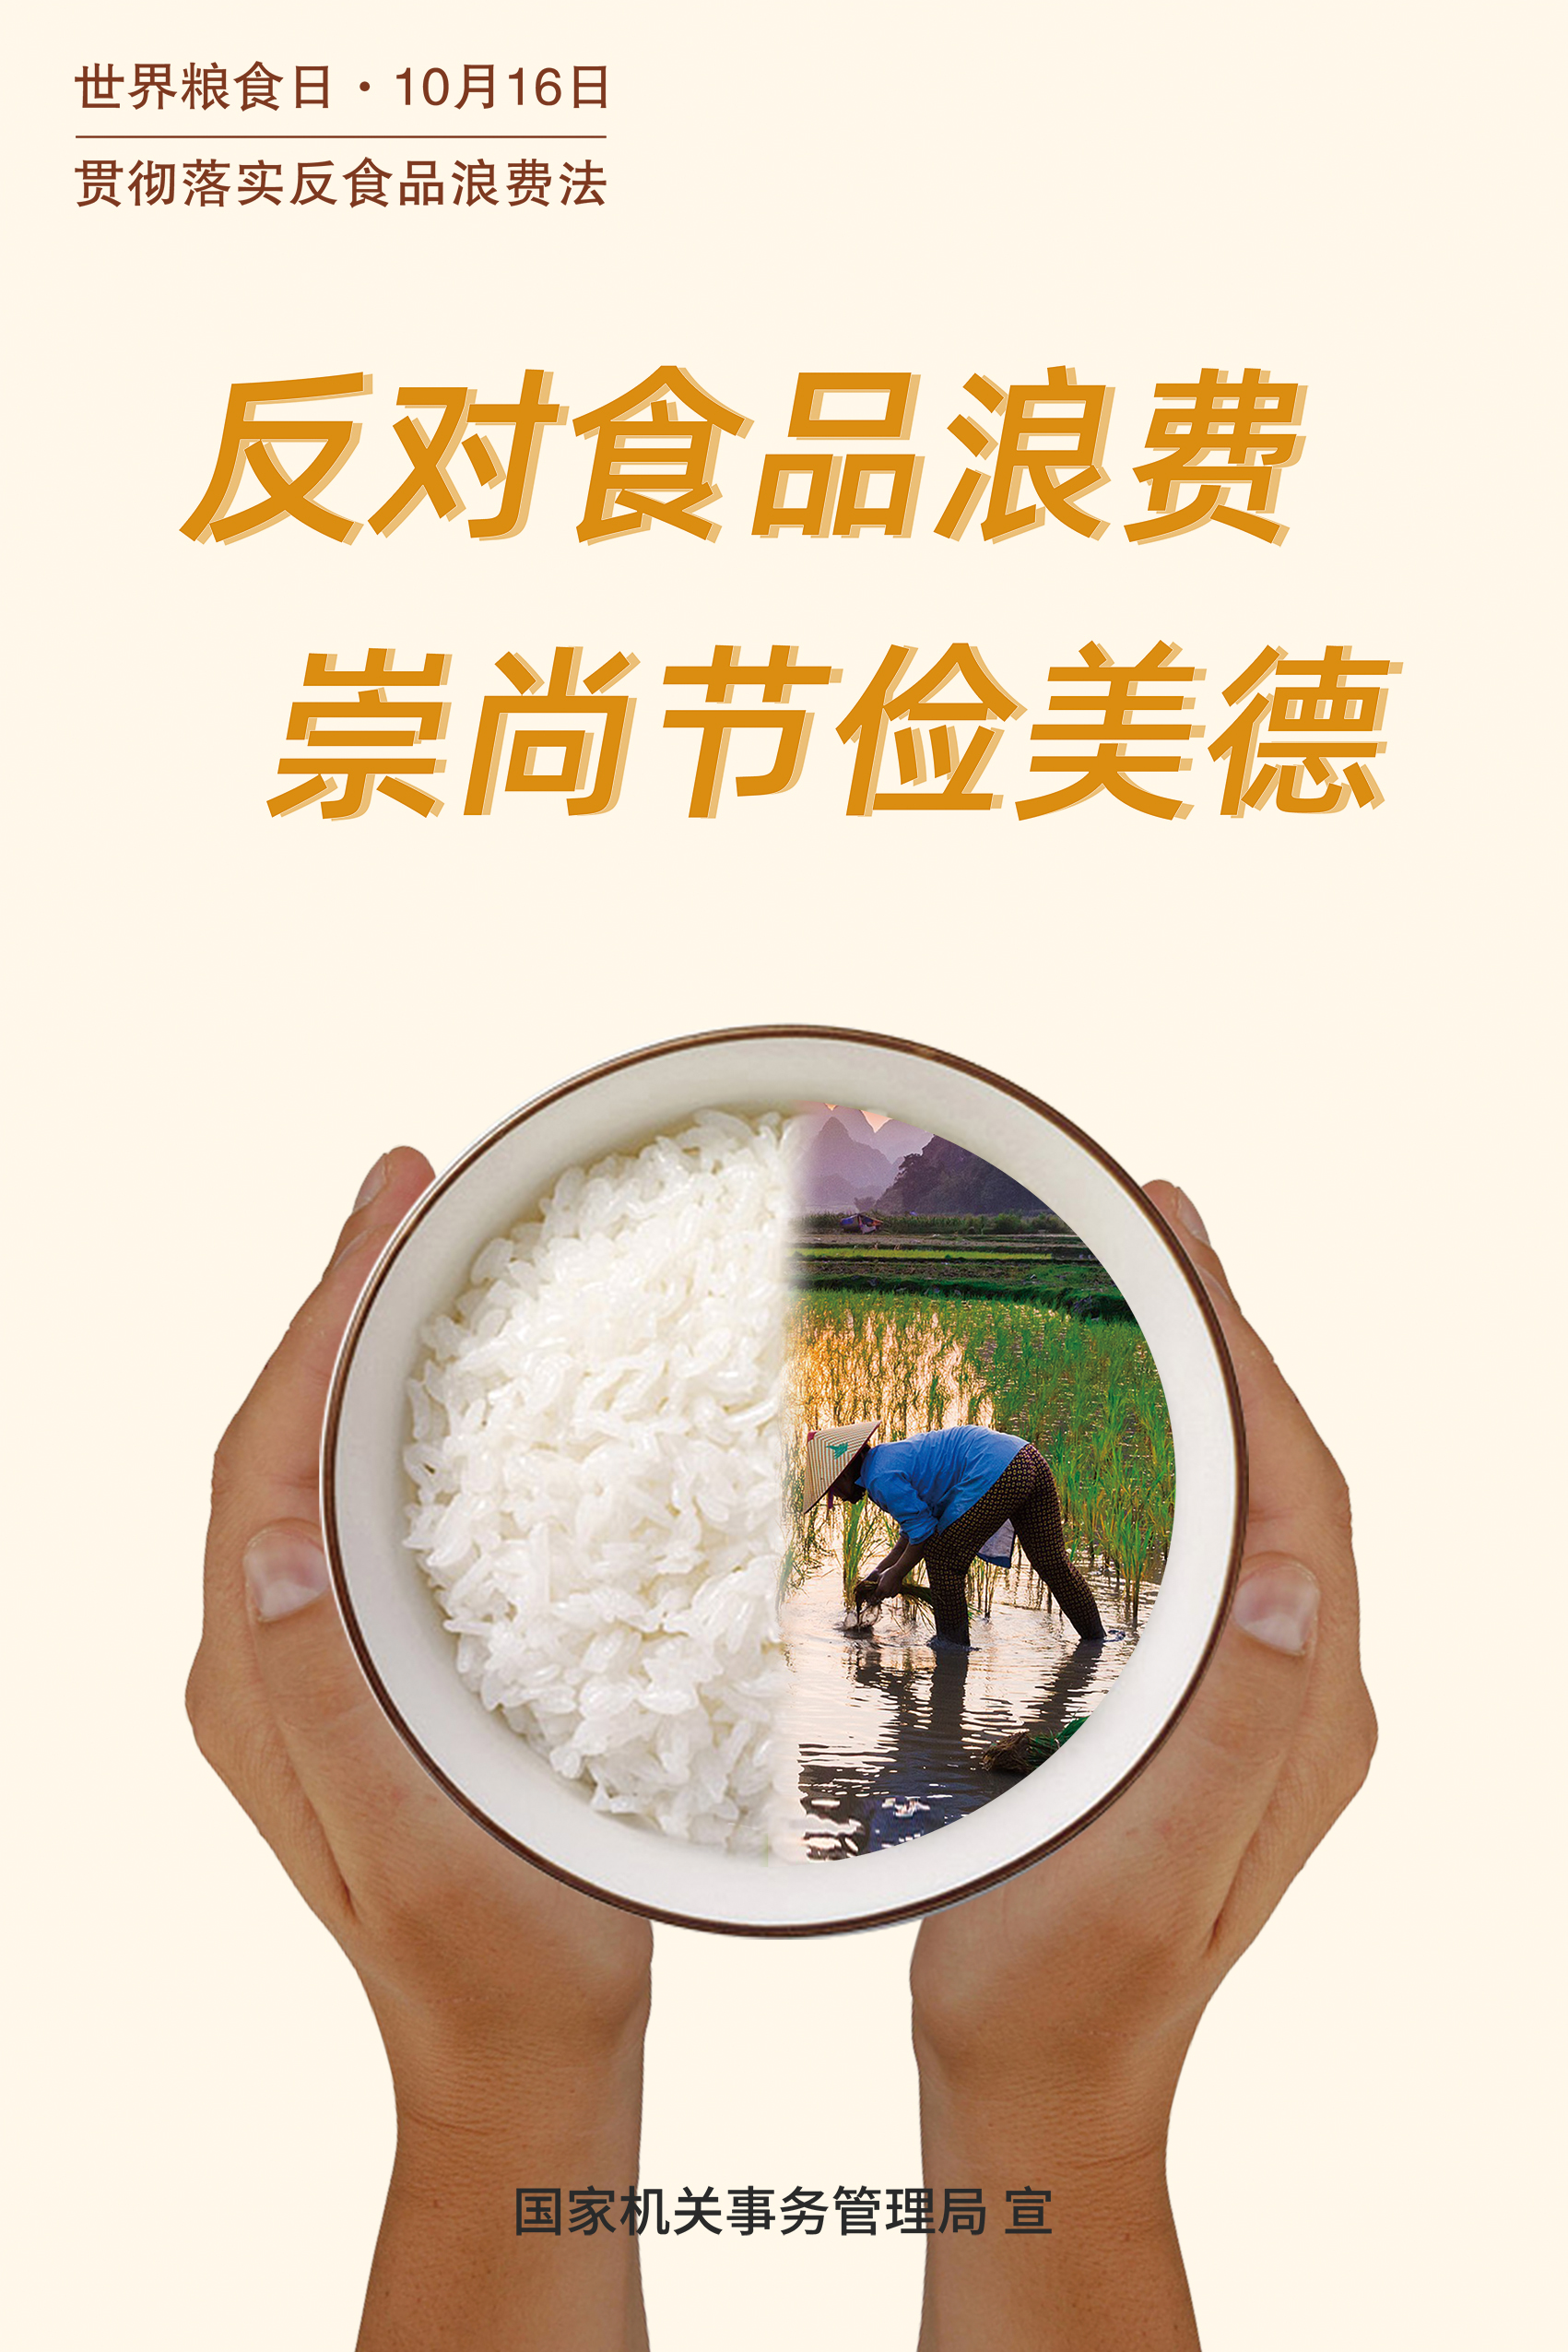 公共机构反食品浪费宣传海报-上网版2.jpg